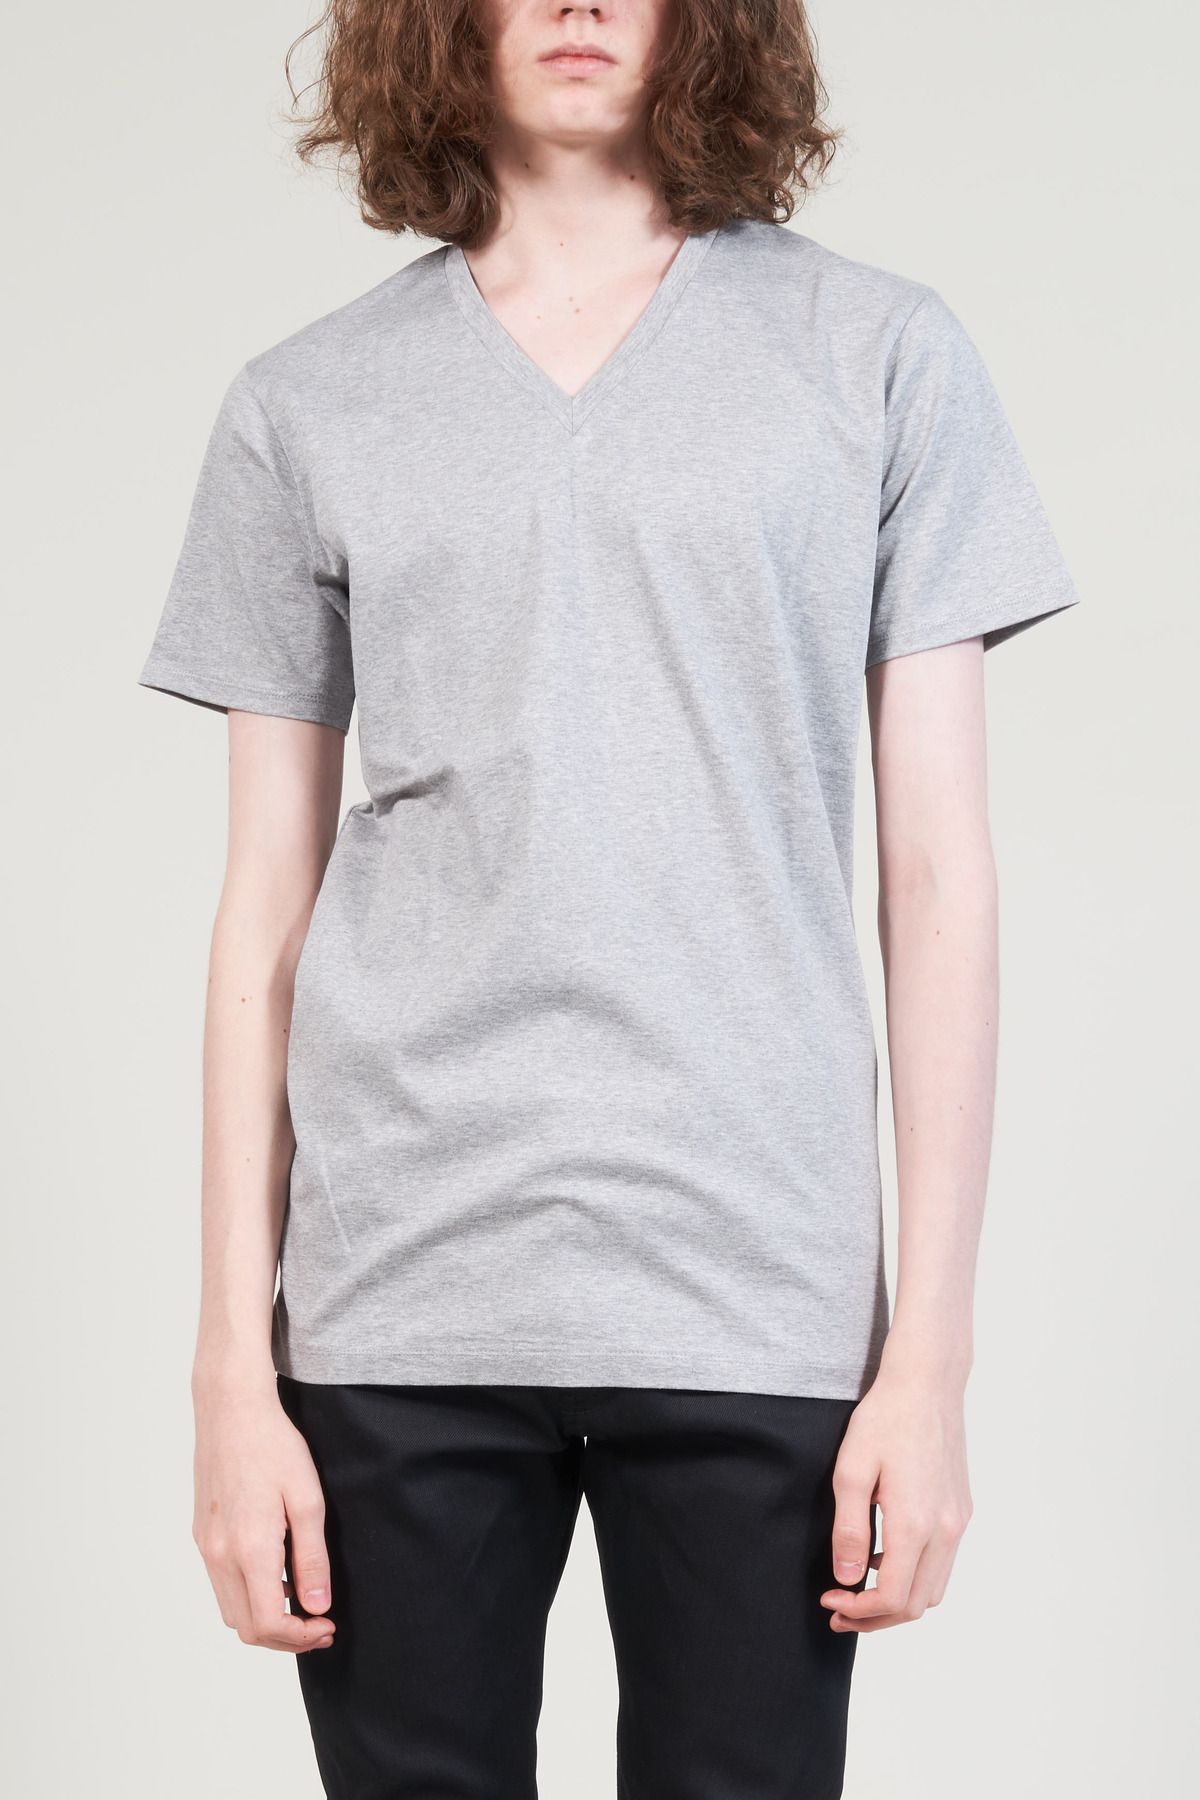 GalaabenD ロンT シャツ Tシャツ/カットソー(七分/長袖) トップス メンズ インターネット通販